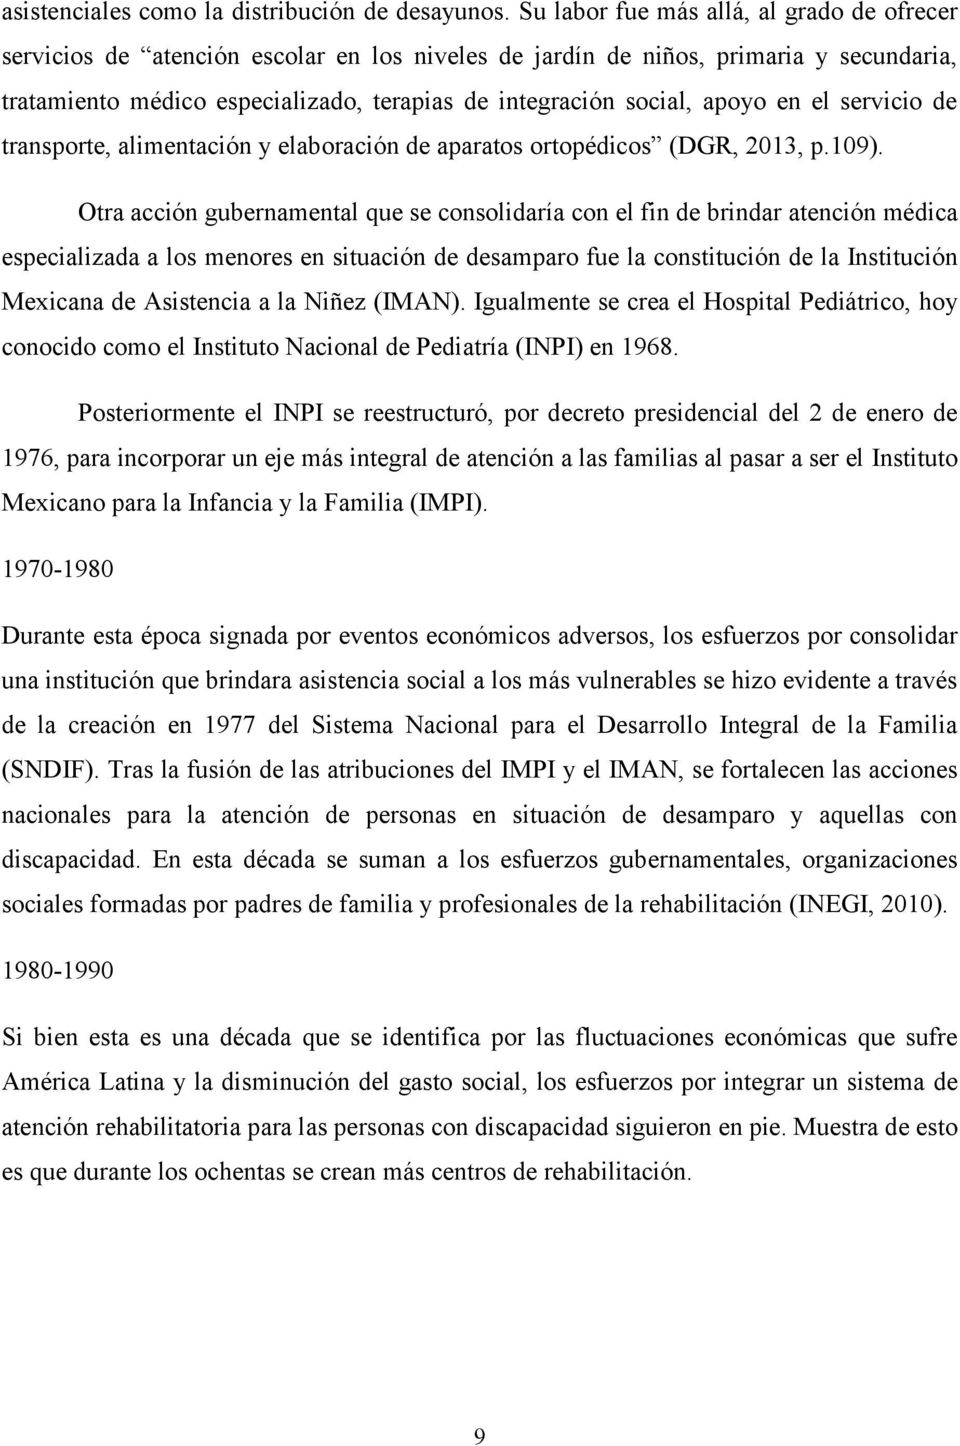 apoyo en el servicio de transporte, alimentación y elaboración de aparatos ortopédicos (DGR, 2013, p.109).